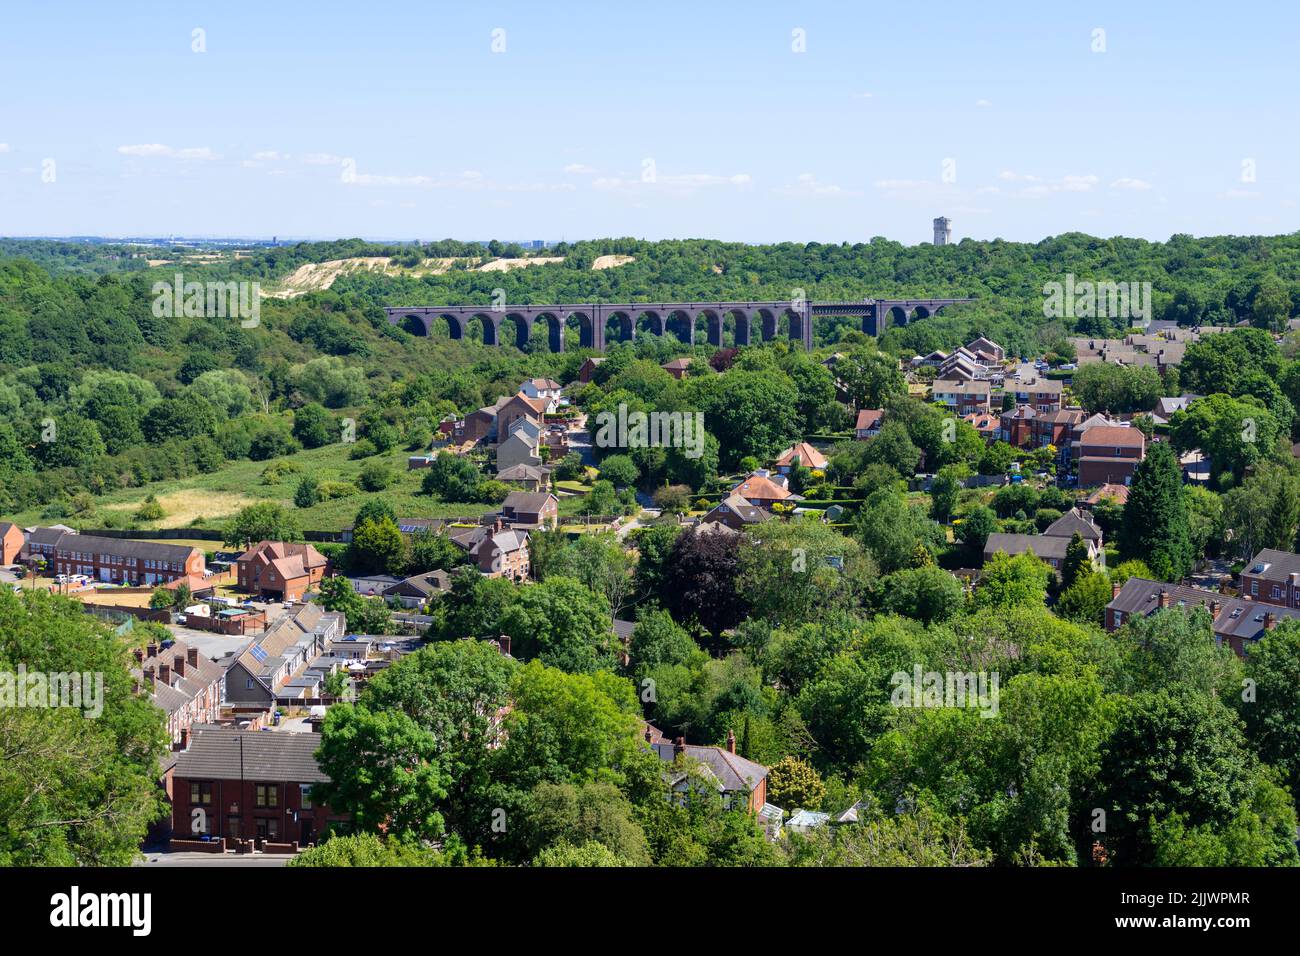 Vista aérea de la ciudad de Conisbrough y Viaducto de Conisbrough Un viaducto ferroviario en desuso de Conisbrough cerca de Doncaster South Yorkshire Inglaterra Reino Unido Europa Foto de stock